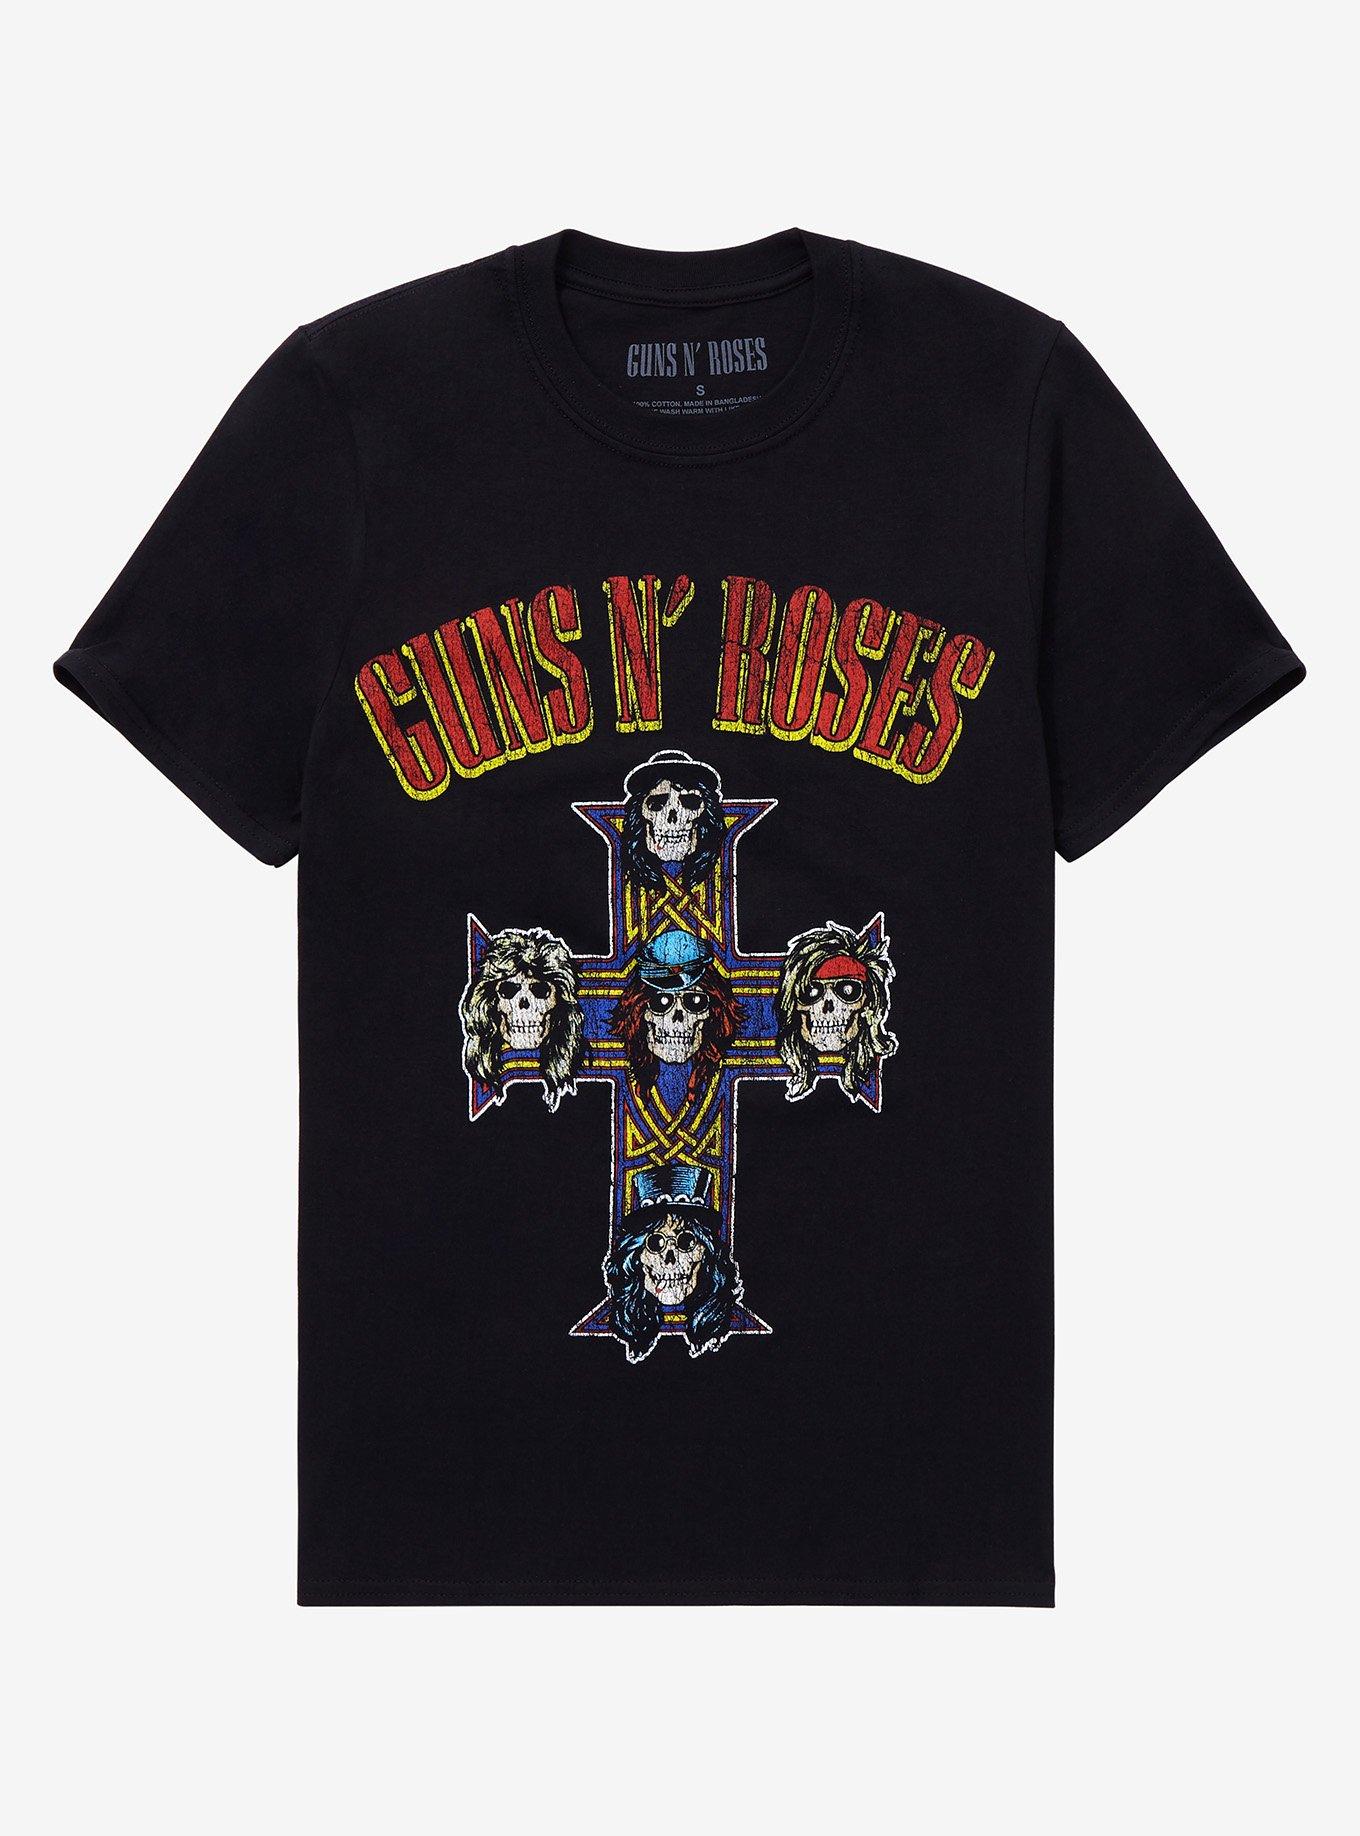 Guns N' Roses Appetite For Destruction T-Shirt, BLACK, hi-res